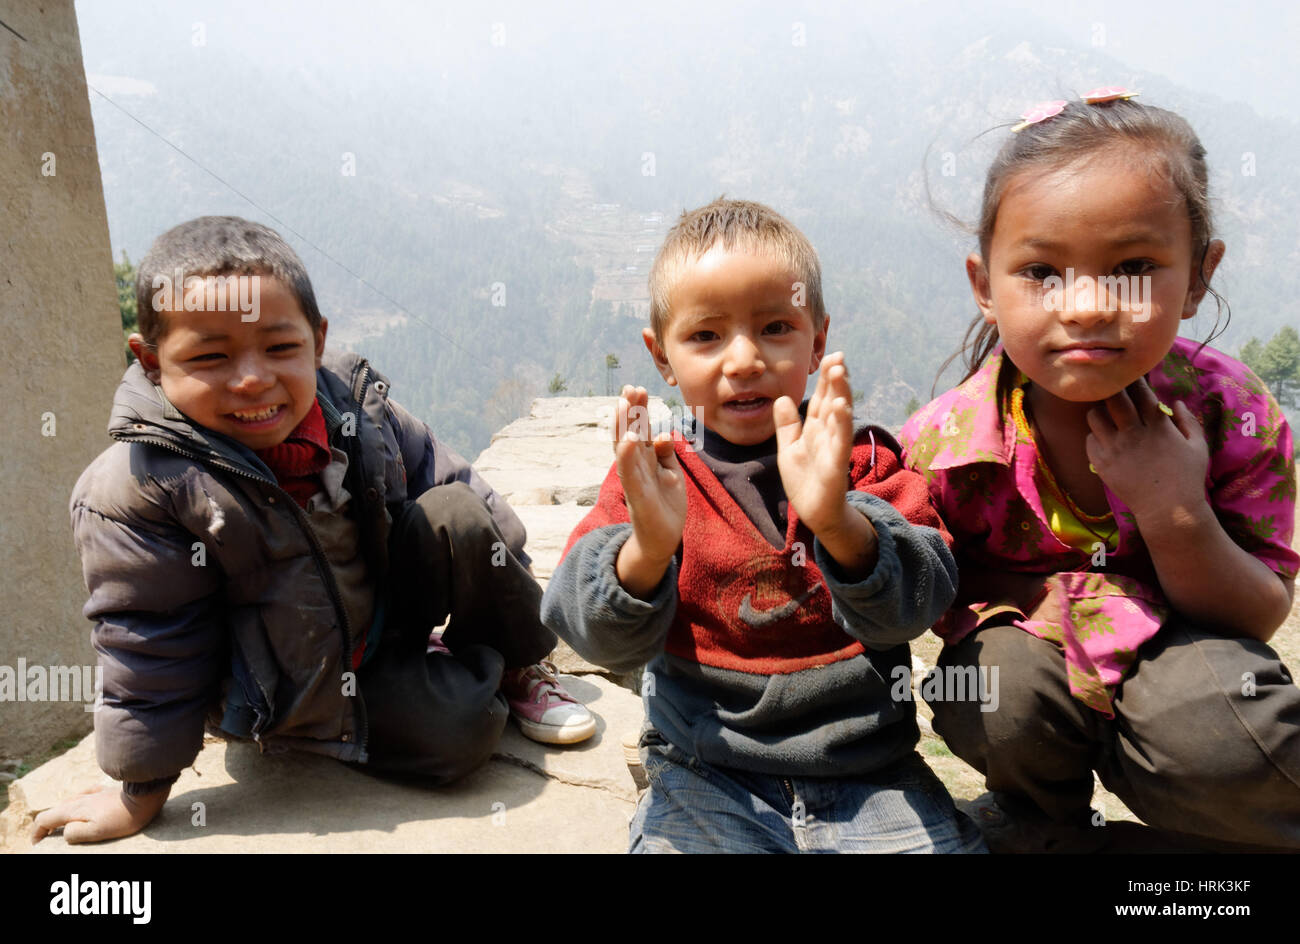 Ritratto di bambini nepalesi nella regione del Khumbu del Nepal Foto Stock